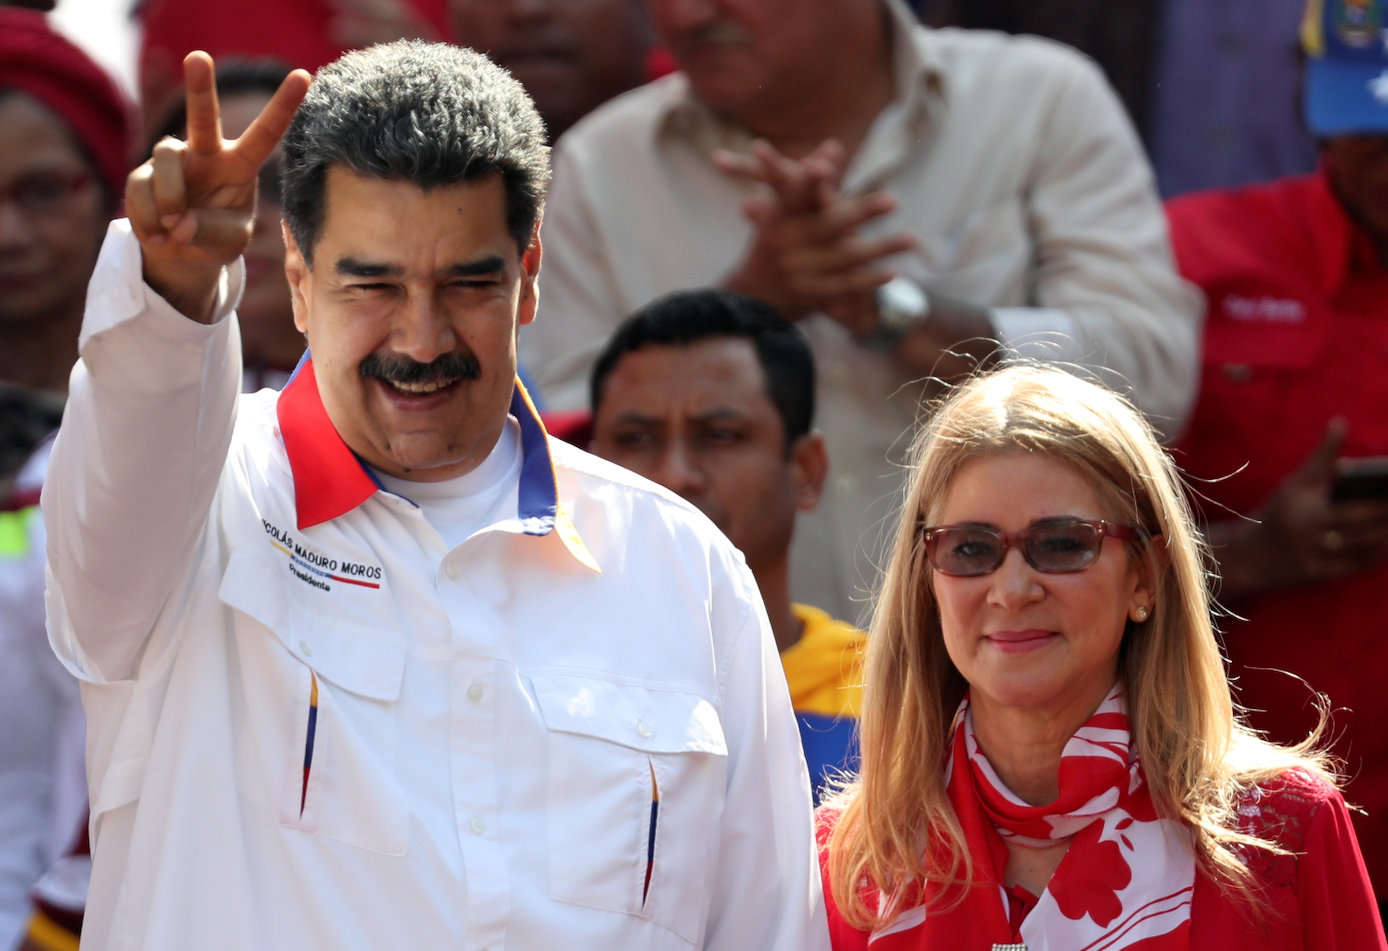 “La única propiedad que tengo es Cilia”: El nuevo comentario machista de Maduro